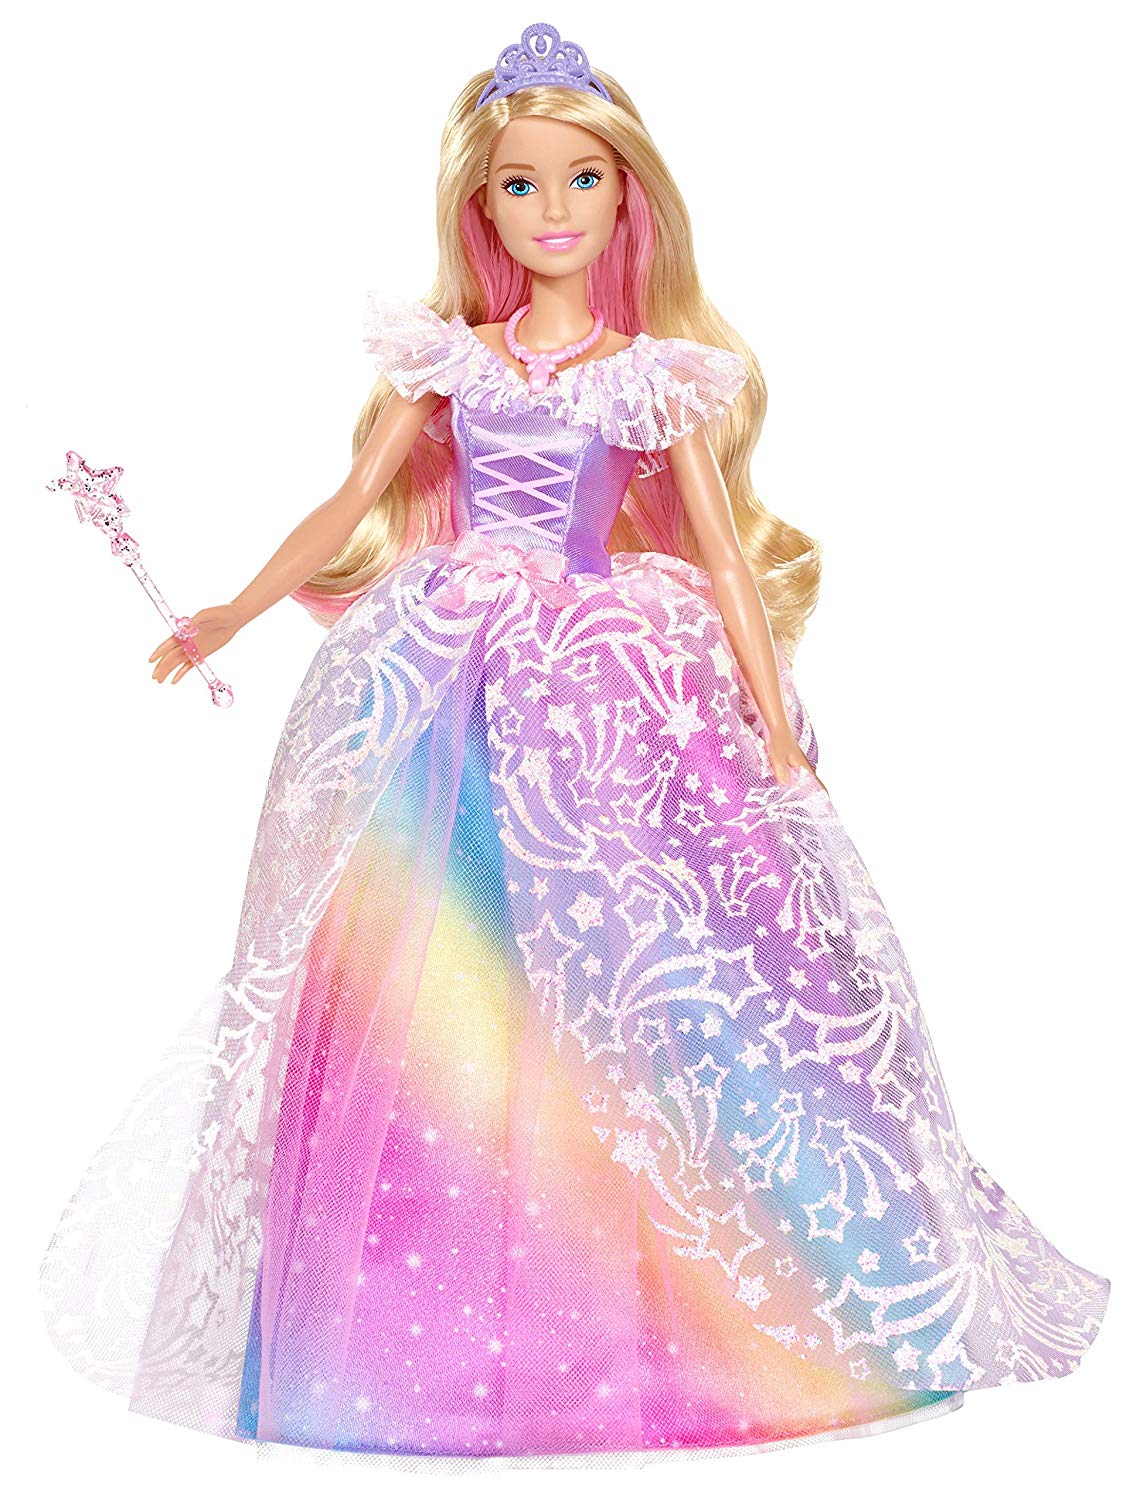 Barbie Dreamtopia poupée Princesse de Rêves avec robe brillante à motifs arc-en-ciel, fournie avec brosse et accessoires, jouet pour enfant, GFR45